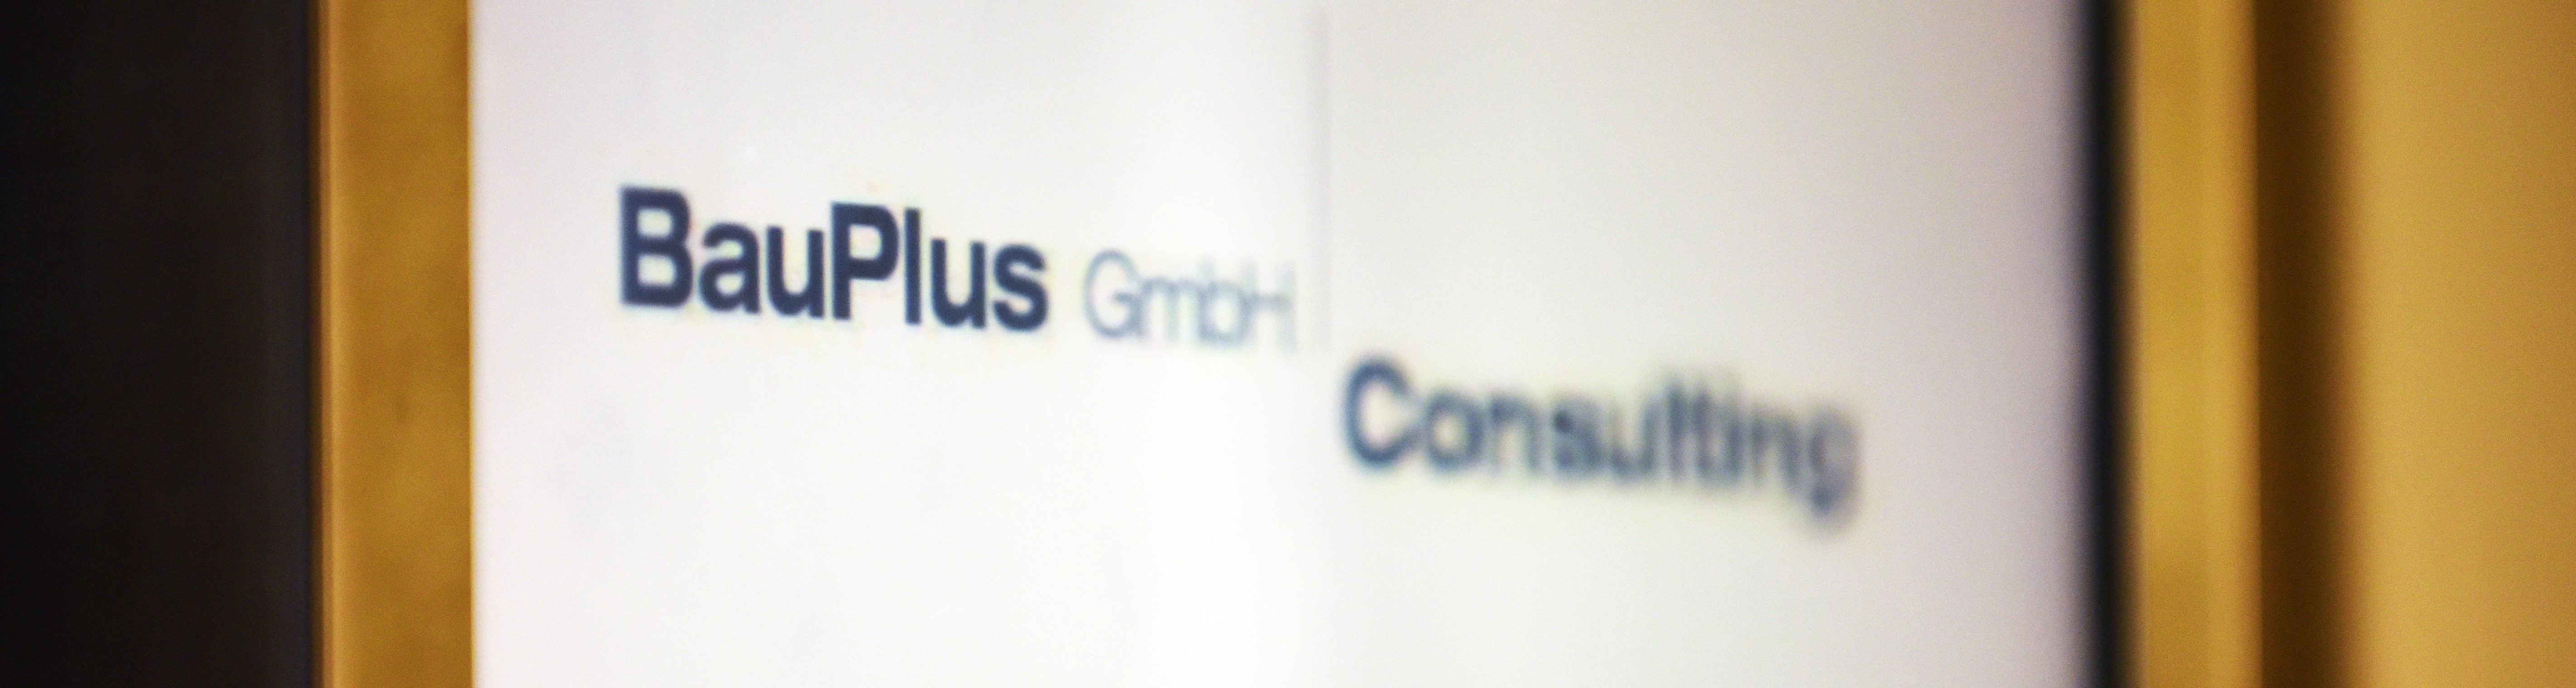 BauPlus GmbH Consulting